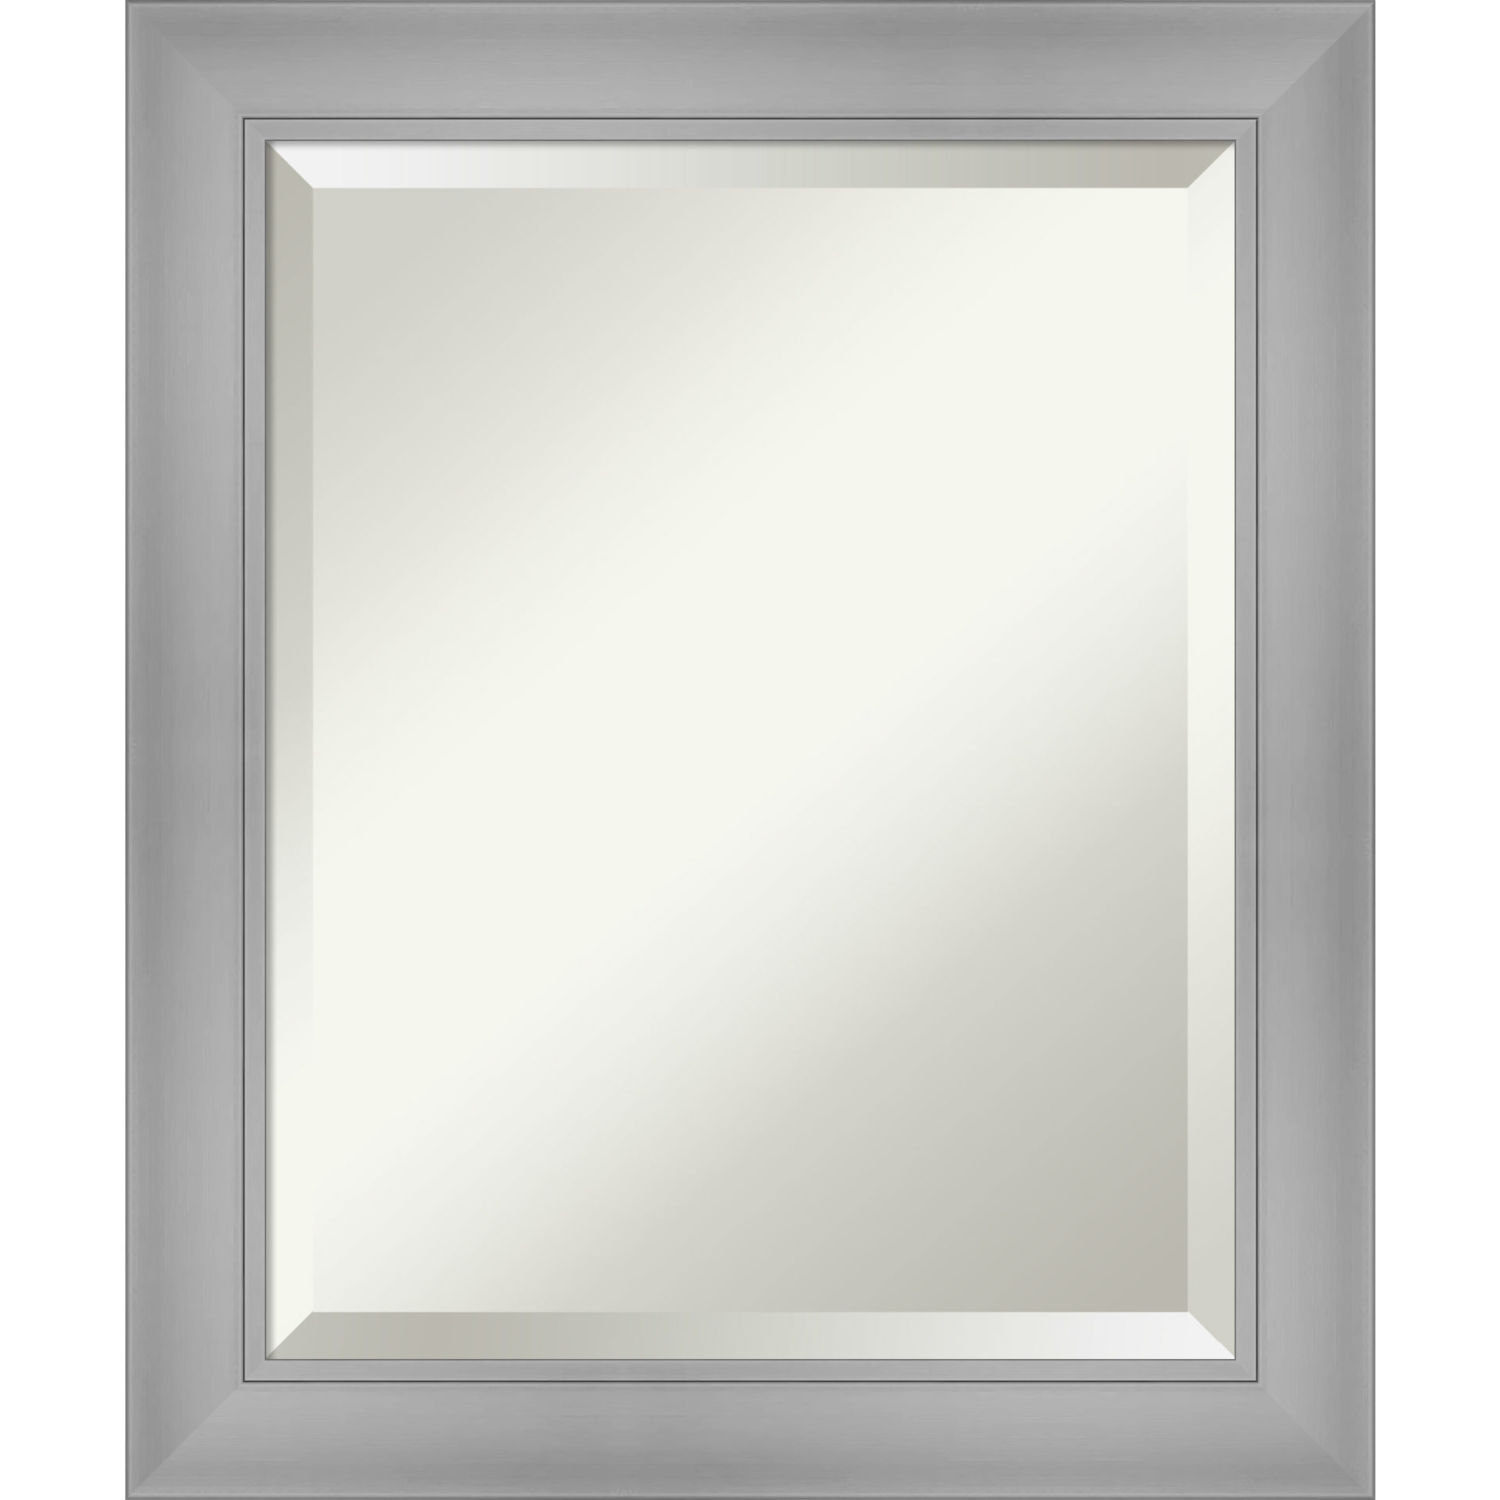 Flair Brushed Nickel 20W X 24H-Inch Bathroom Vanity Wall Mirror